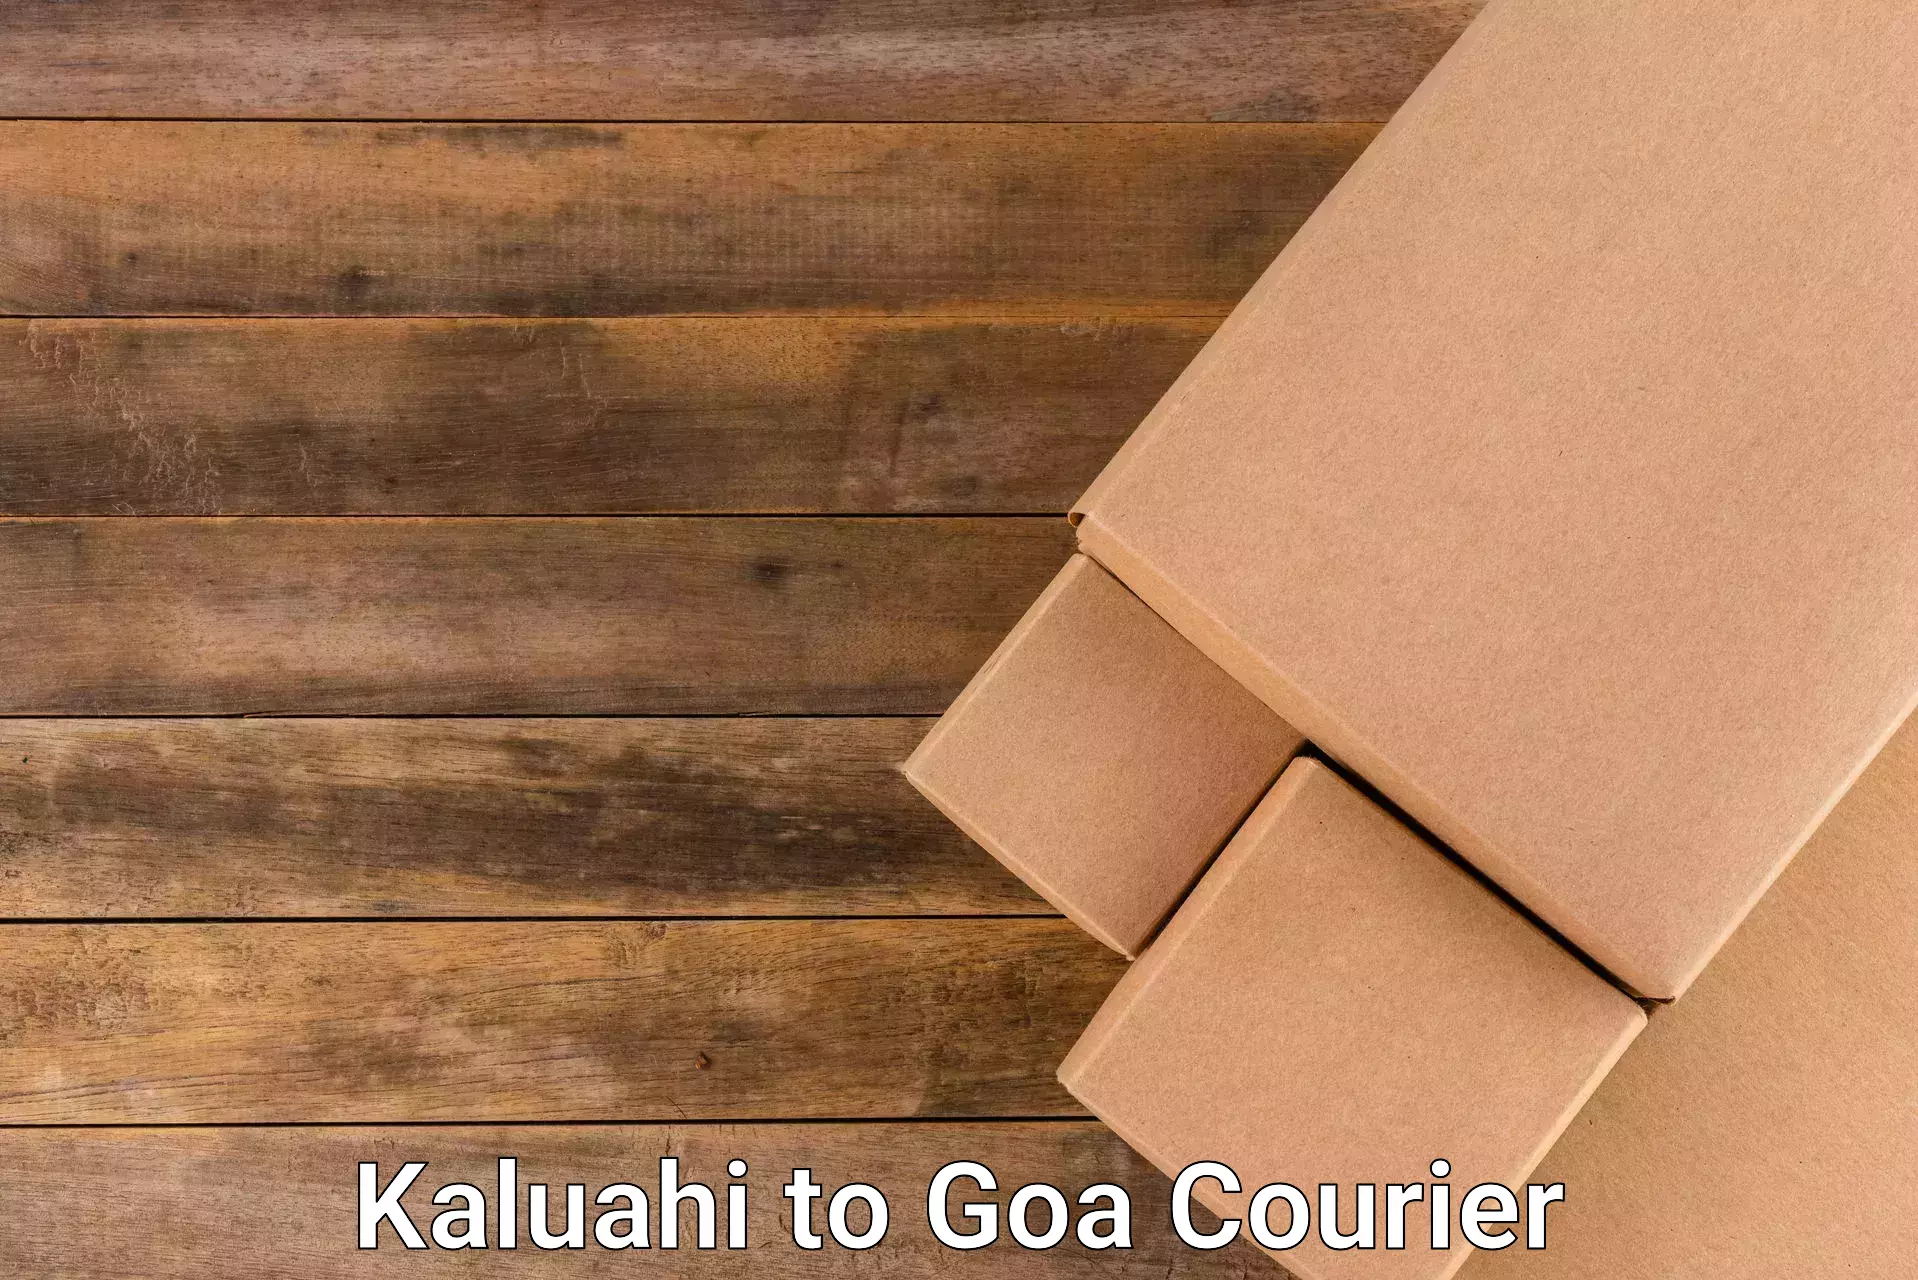 Urban courier service Kaluahi to Bardez